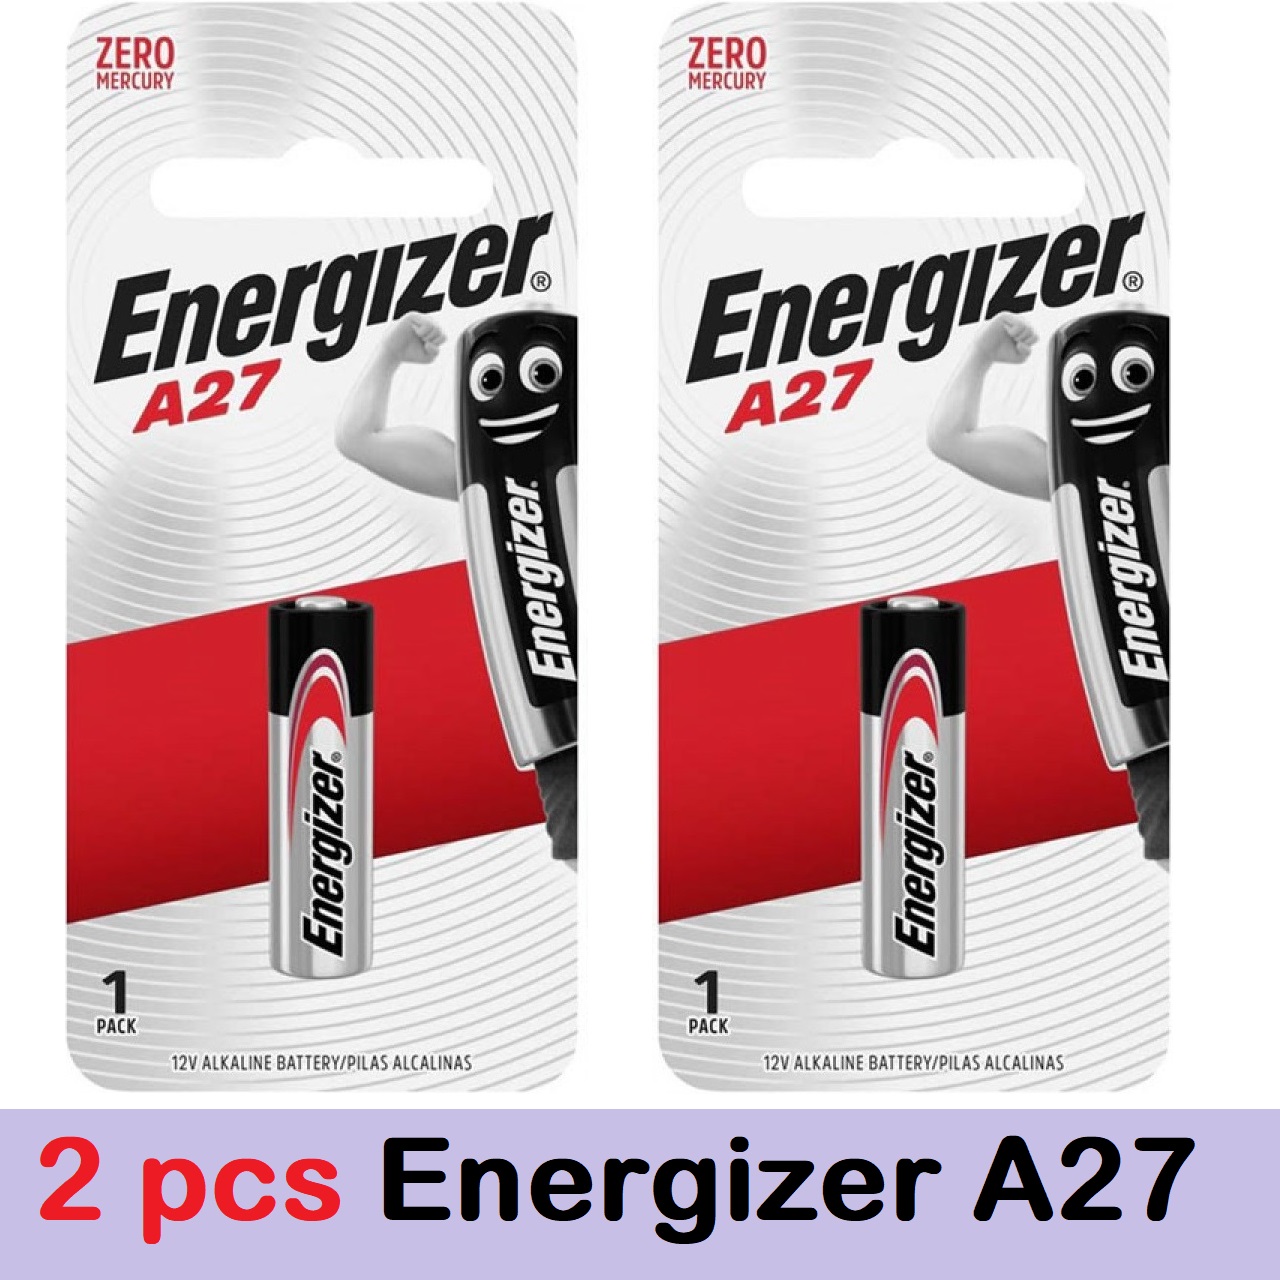 Energizer A27 Batteries 12V Alkaline pack of 6 